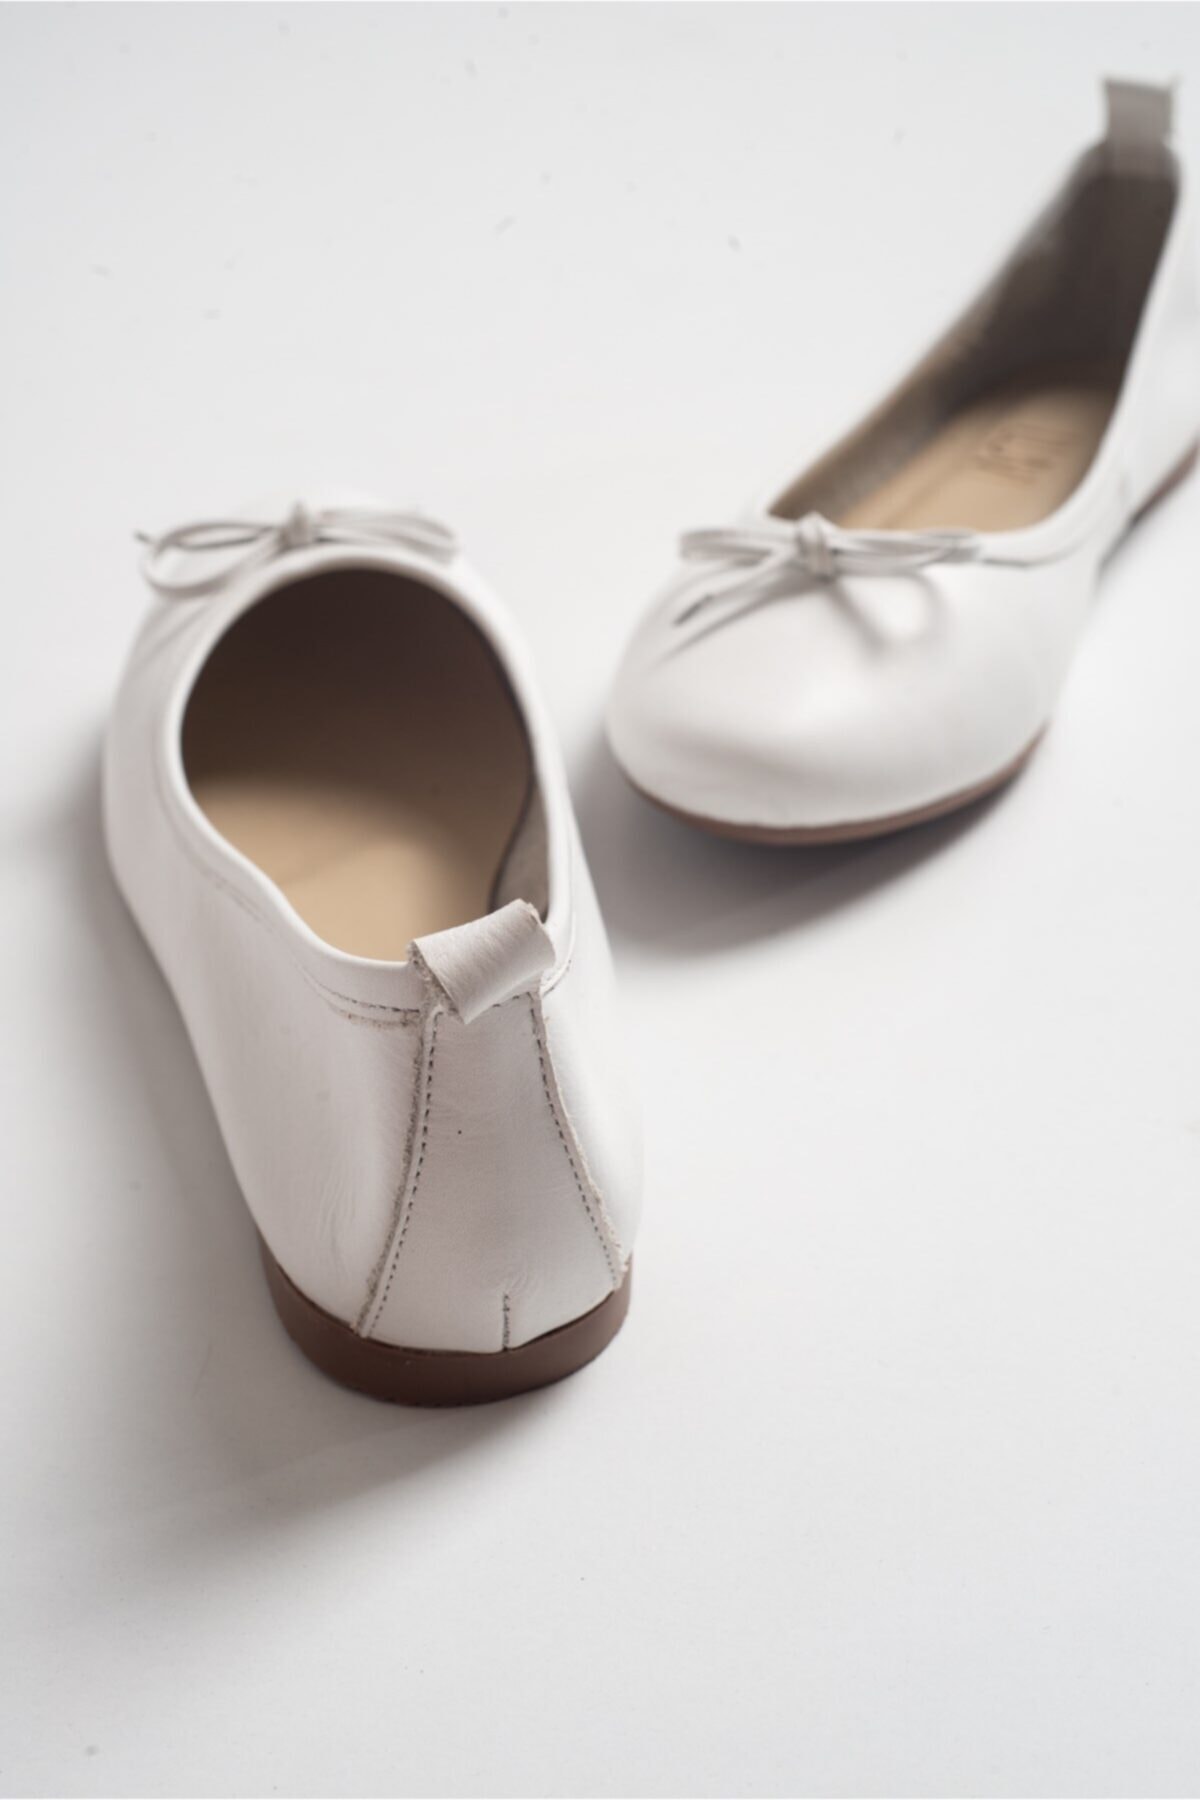 LuviShoes 01 Beyaz Cılt Kadın Babet Ayakkabı ON7222